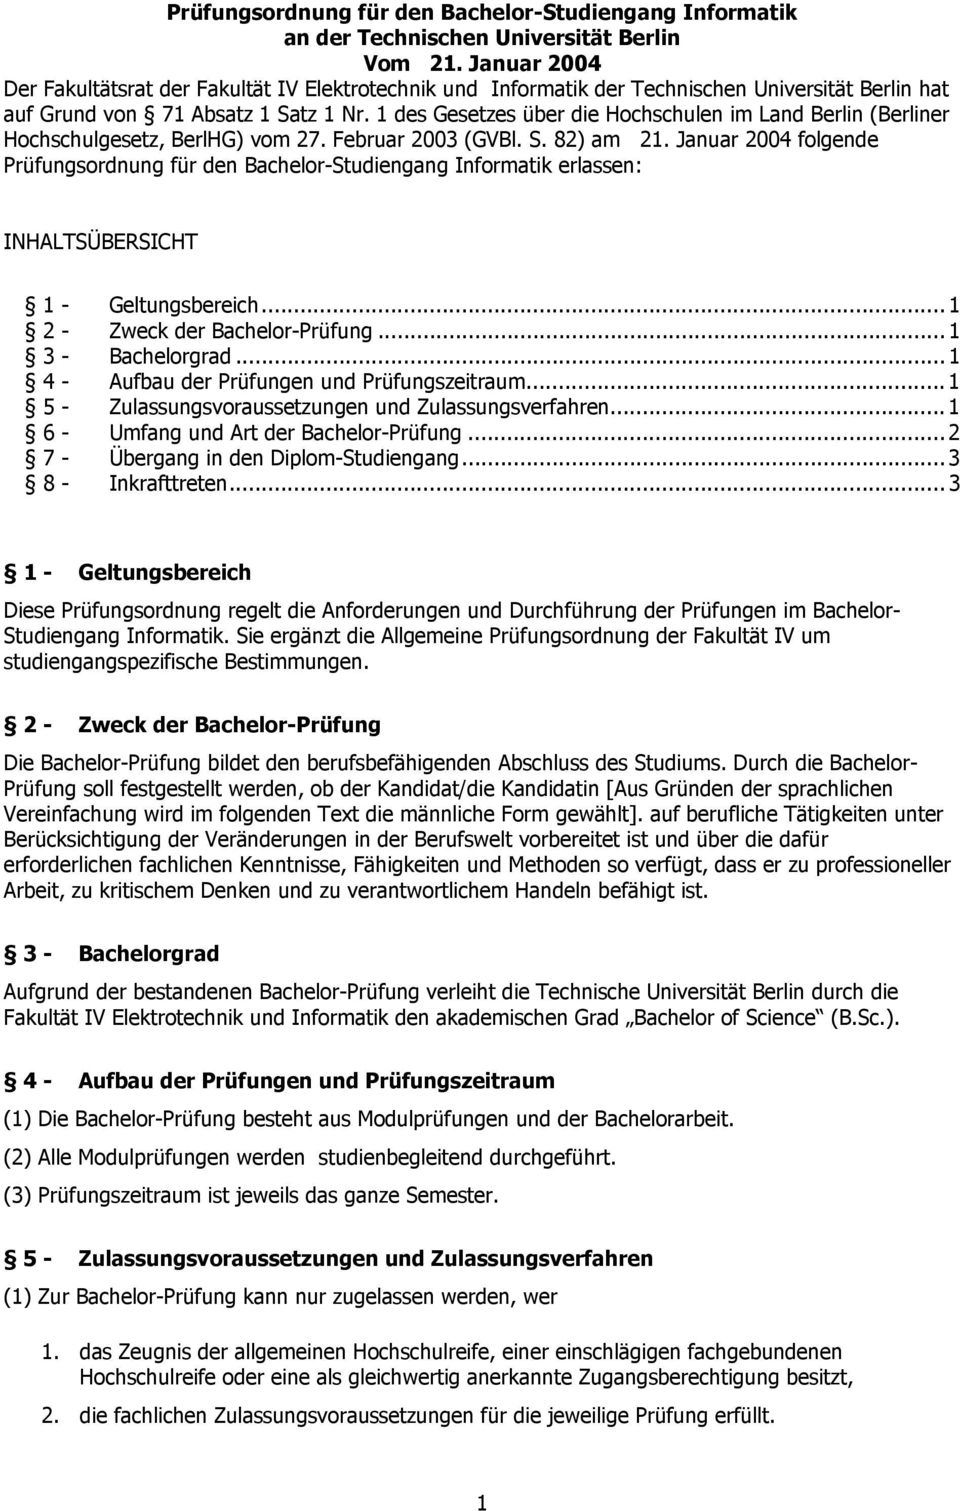 1 des Gesetzes über die Hochschulen im Land Berlin (Berliner Hochschulgesetz, BerlHG) vom 27. Februar 2003 (GVBl. S. 82) am 21.